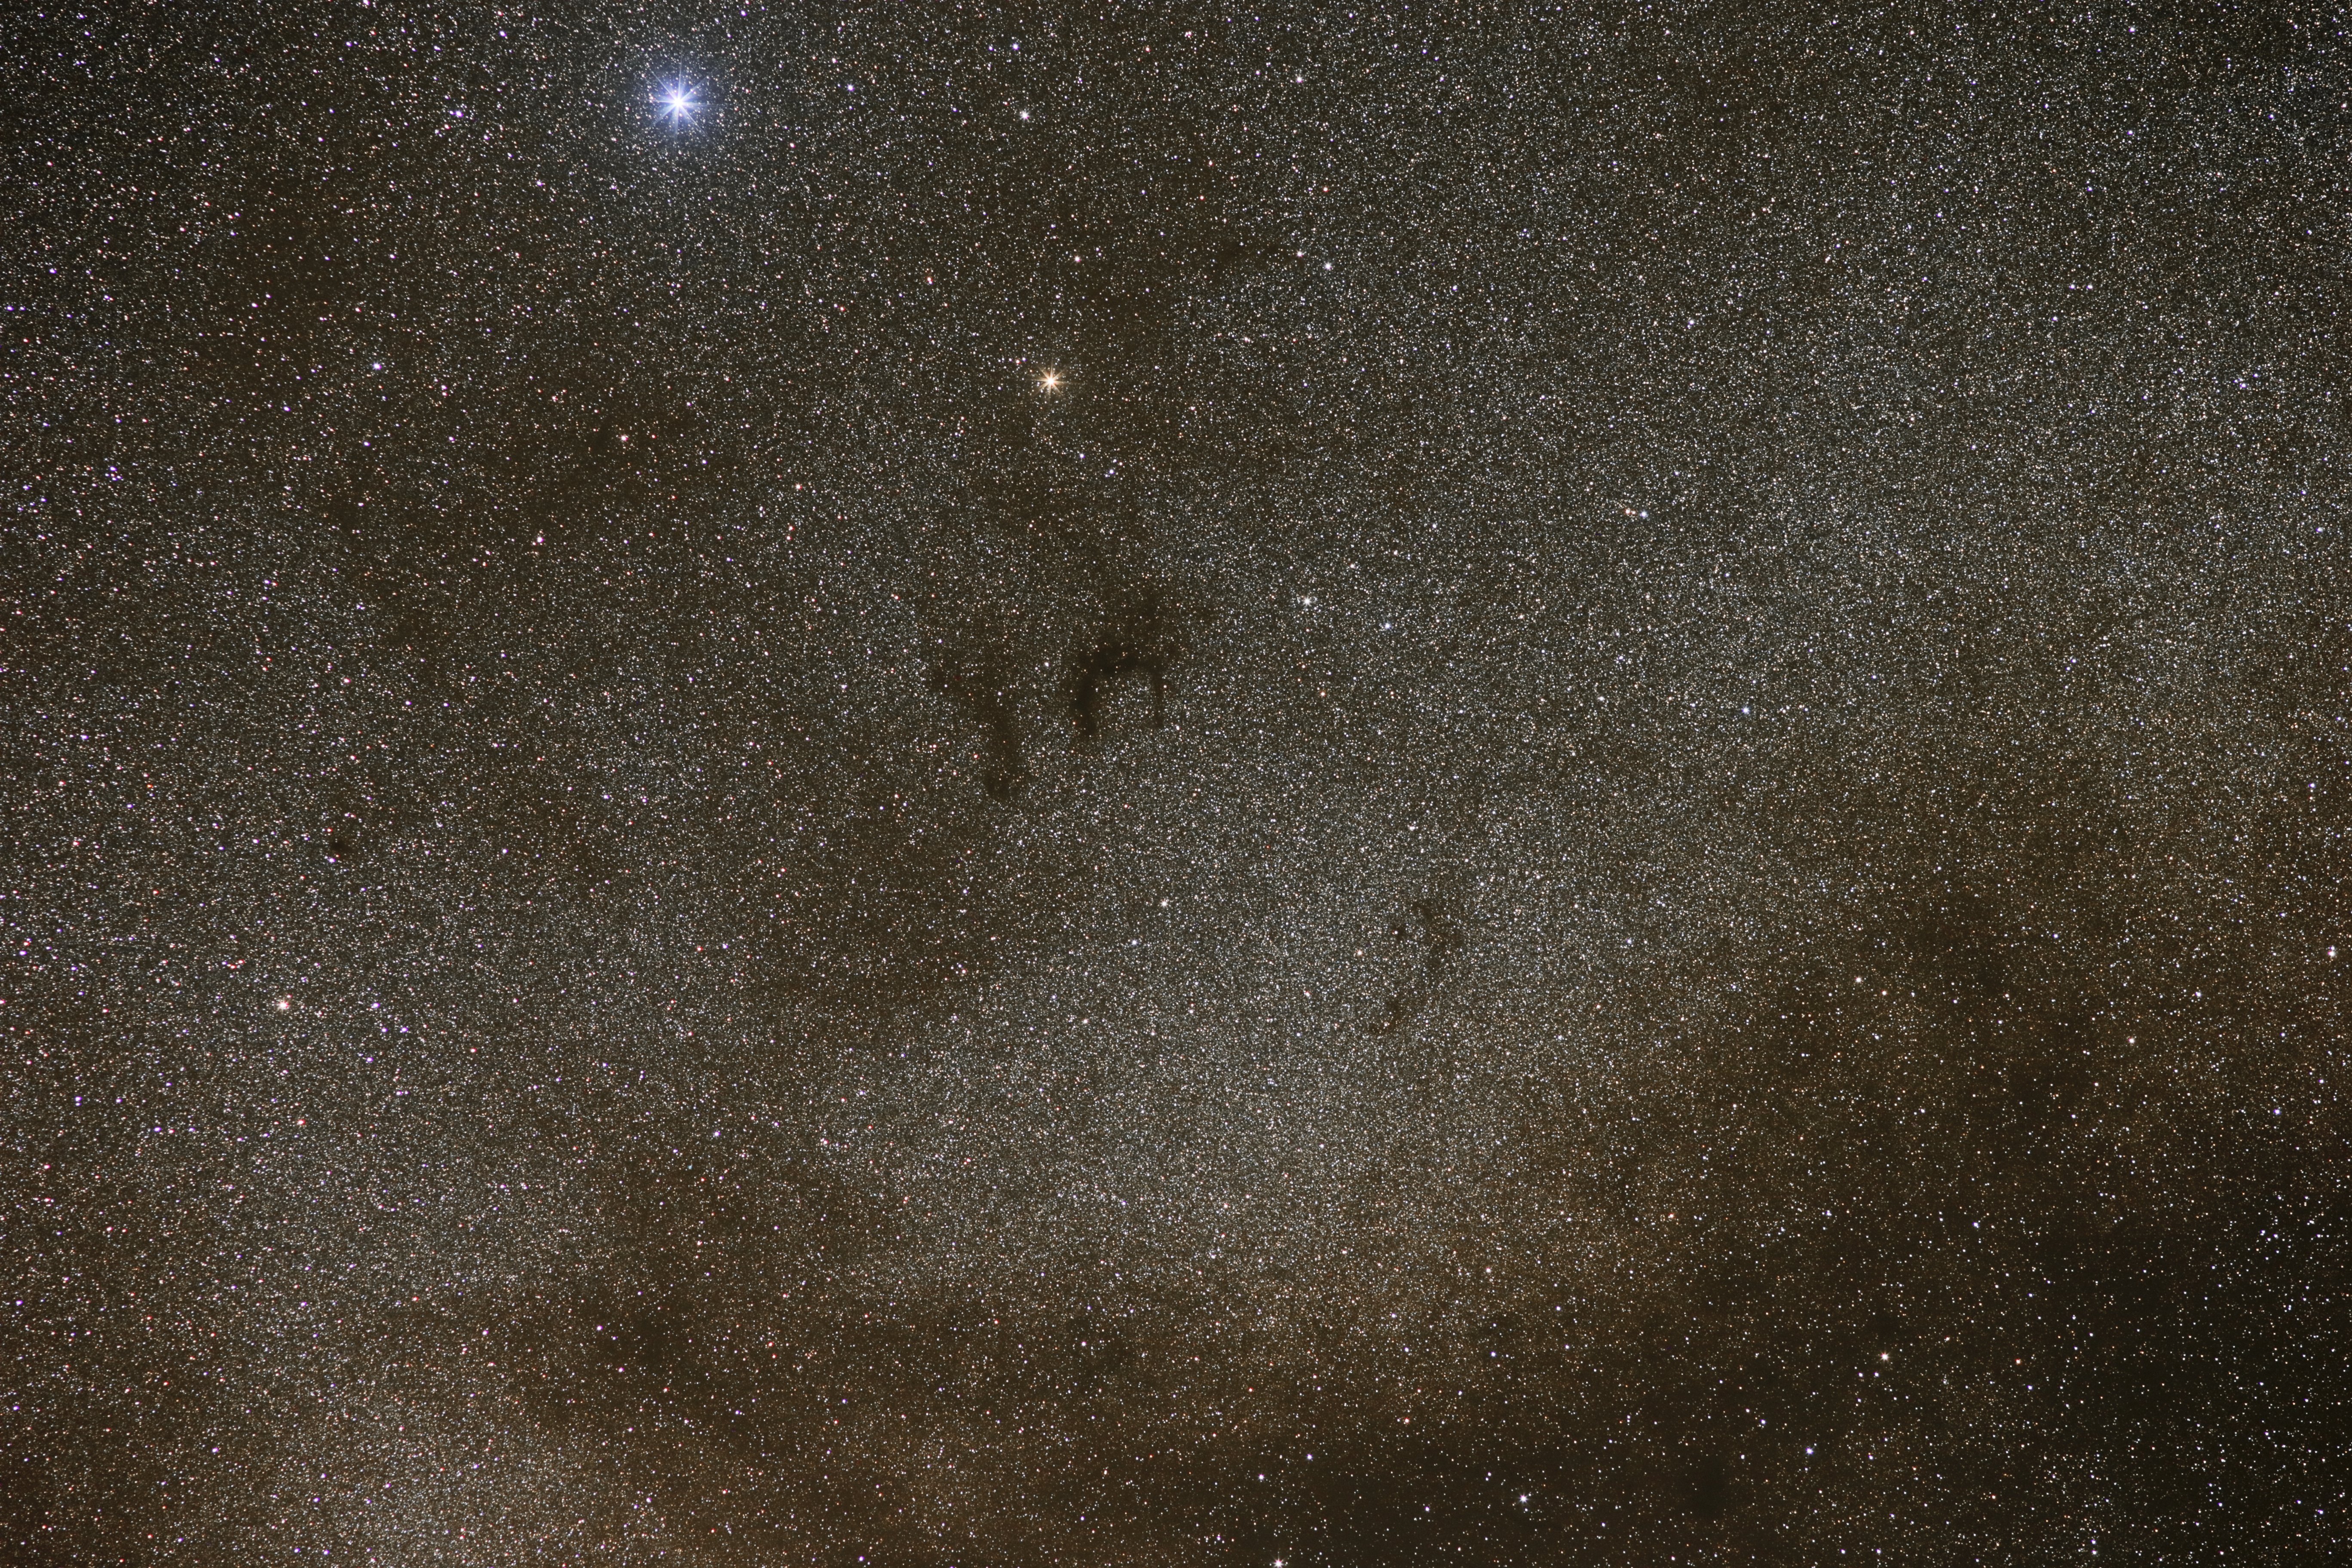 Barnard 142/143 (Aql)